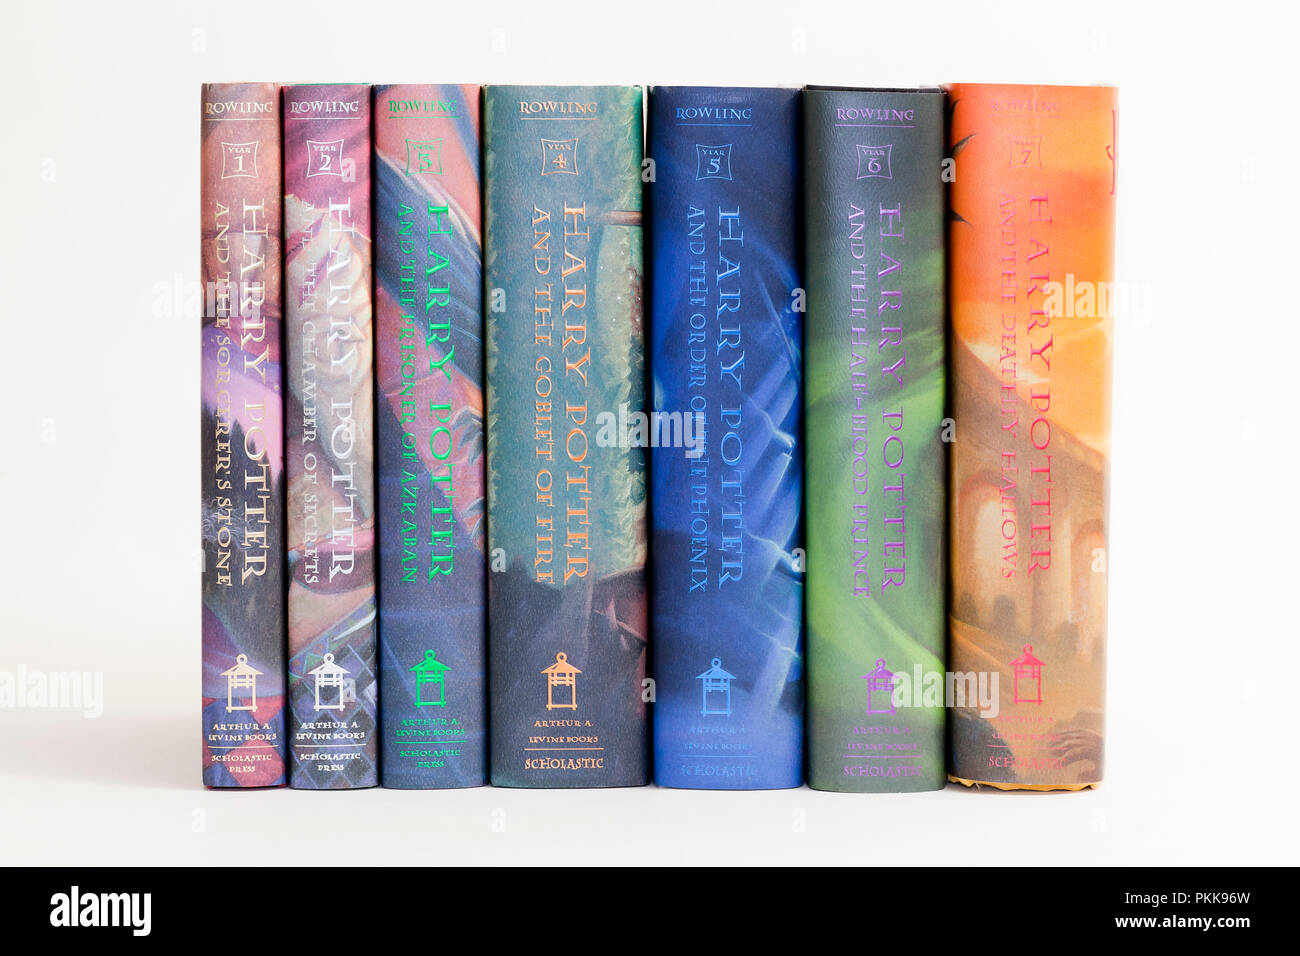 Libros de Harry Potter (libro de Harry Potter) - EE.UU. Foto de stock